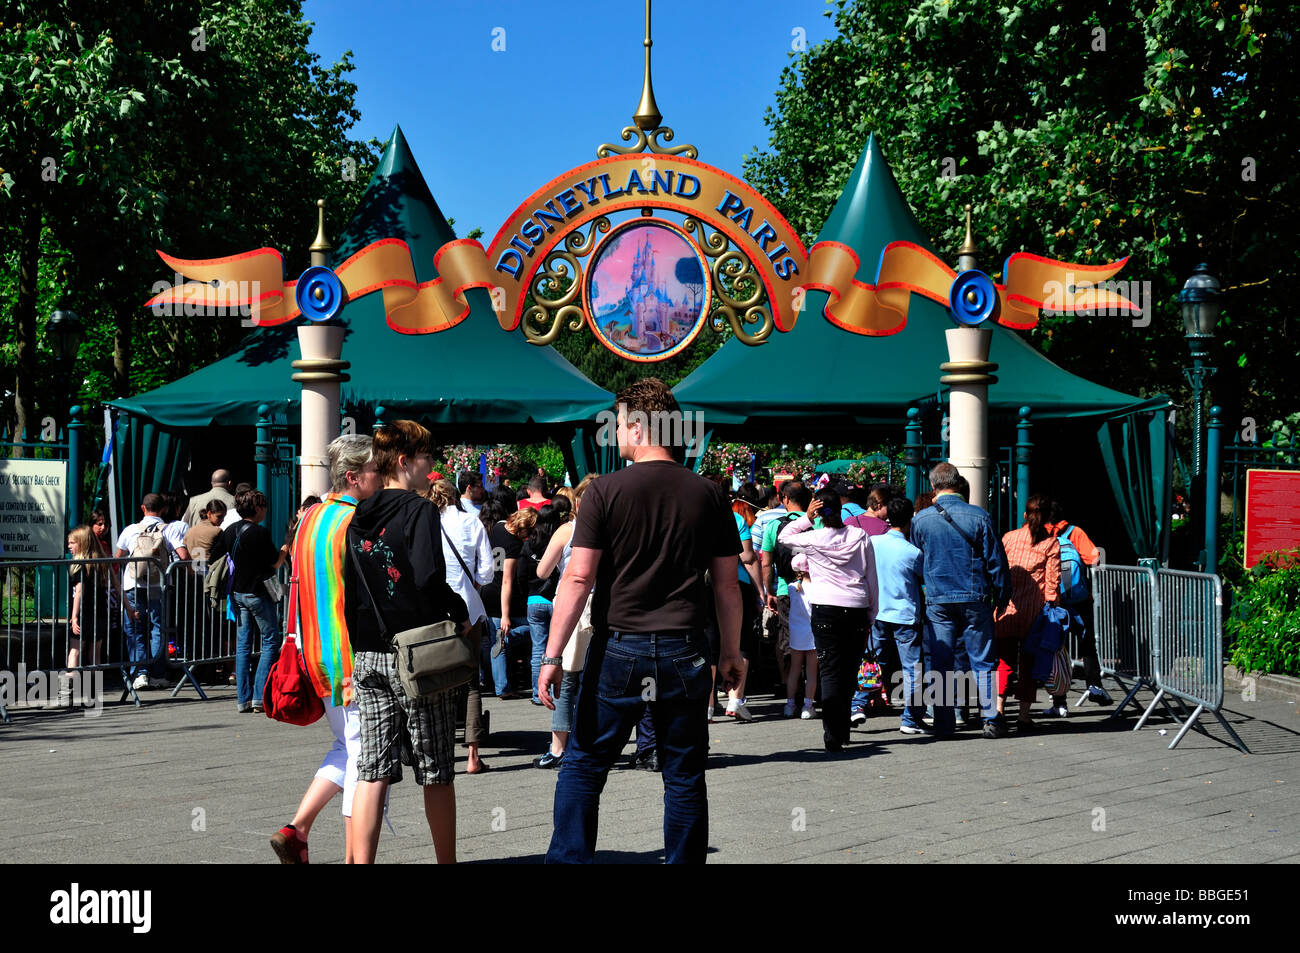 Chessy France, 'Parchi a tema » persone affollate, famiglia, visita 'Disneyland Paris' ingresso, esterno, cartello Foto Stock